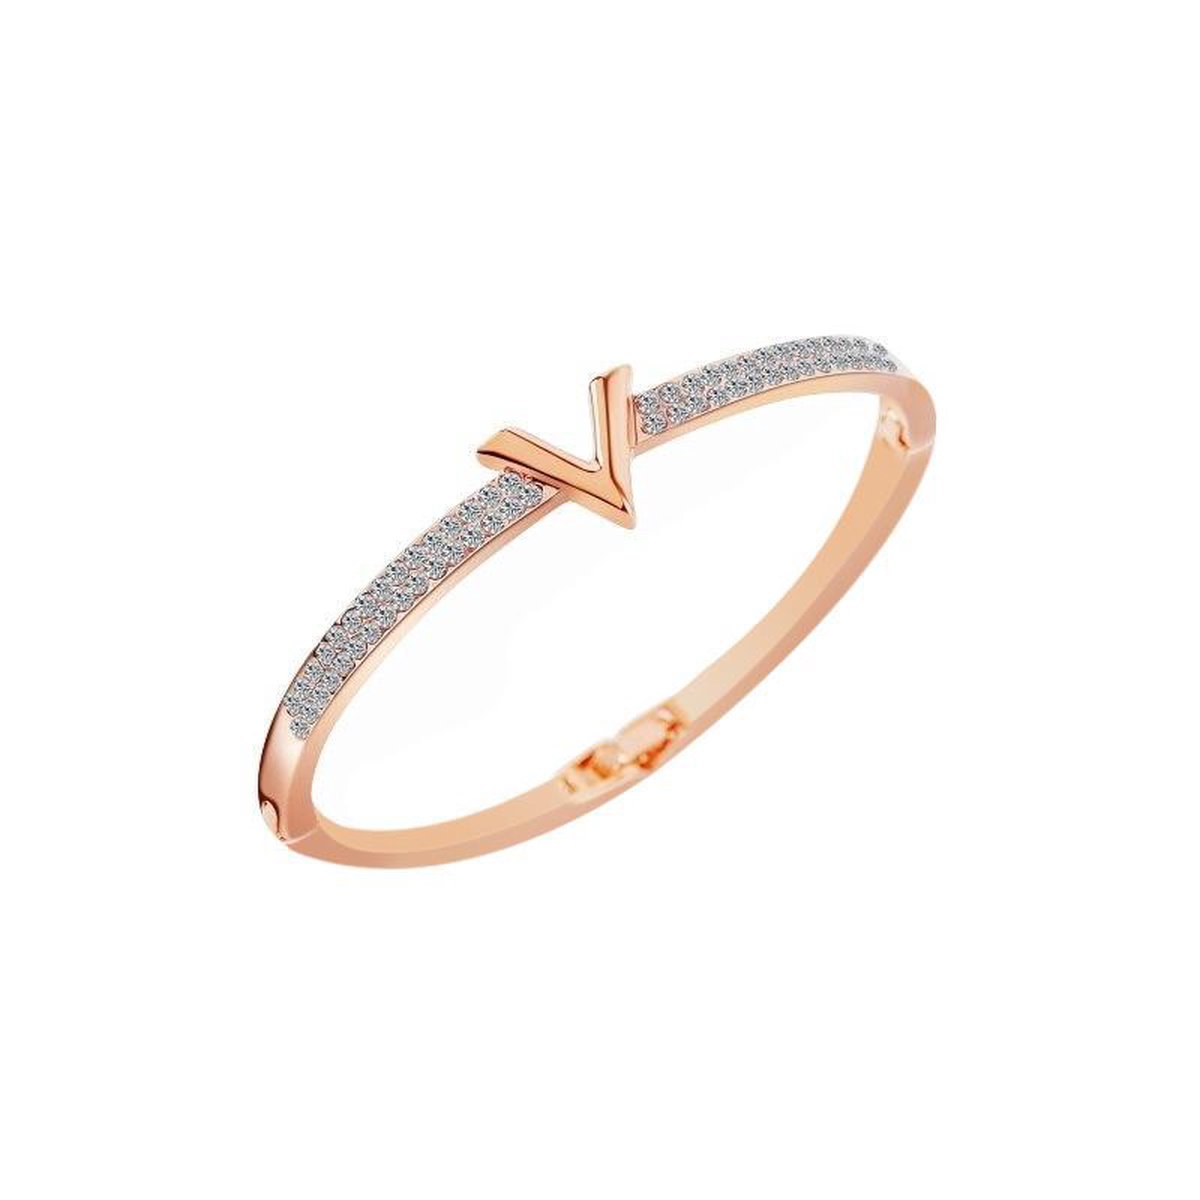 Shoplace Victoria kristallen armband dames - 19cm - Rose goud - Valentijn cadeautje voor haar